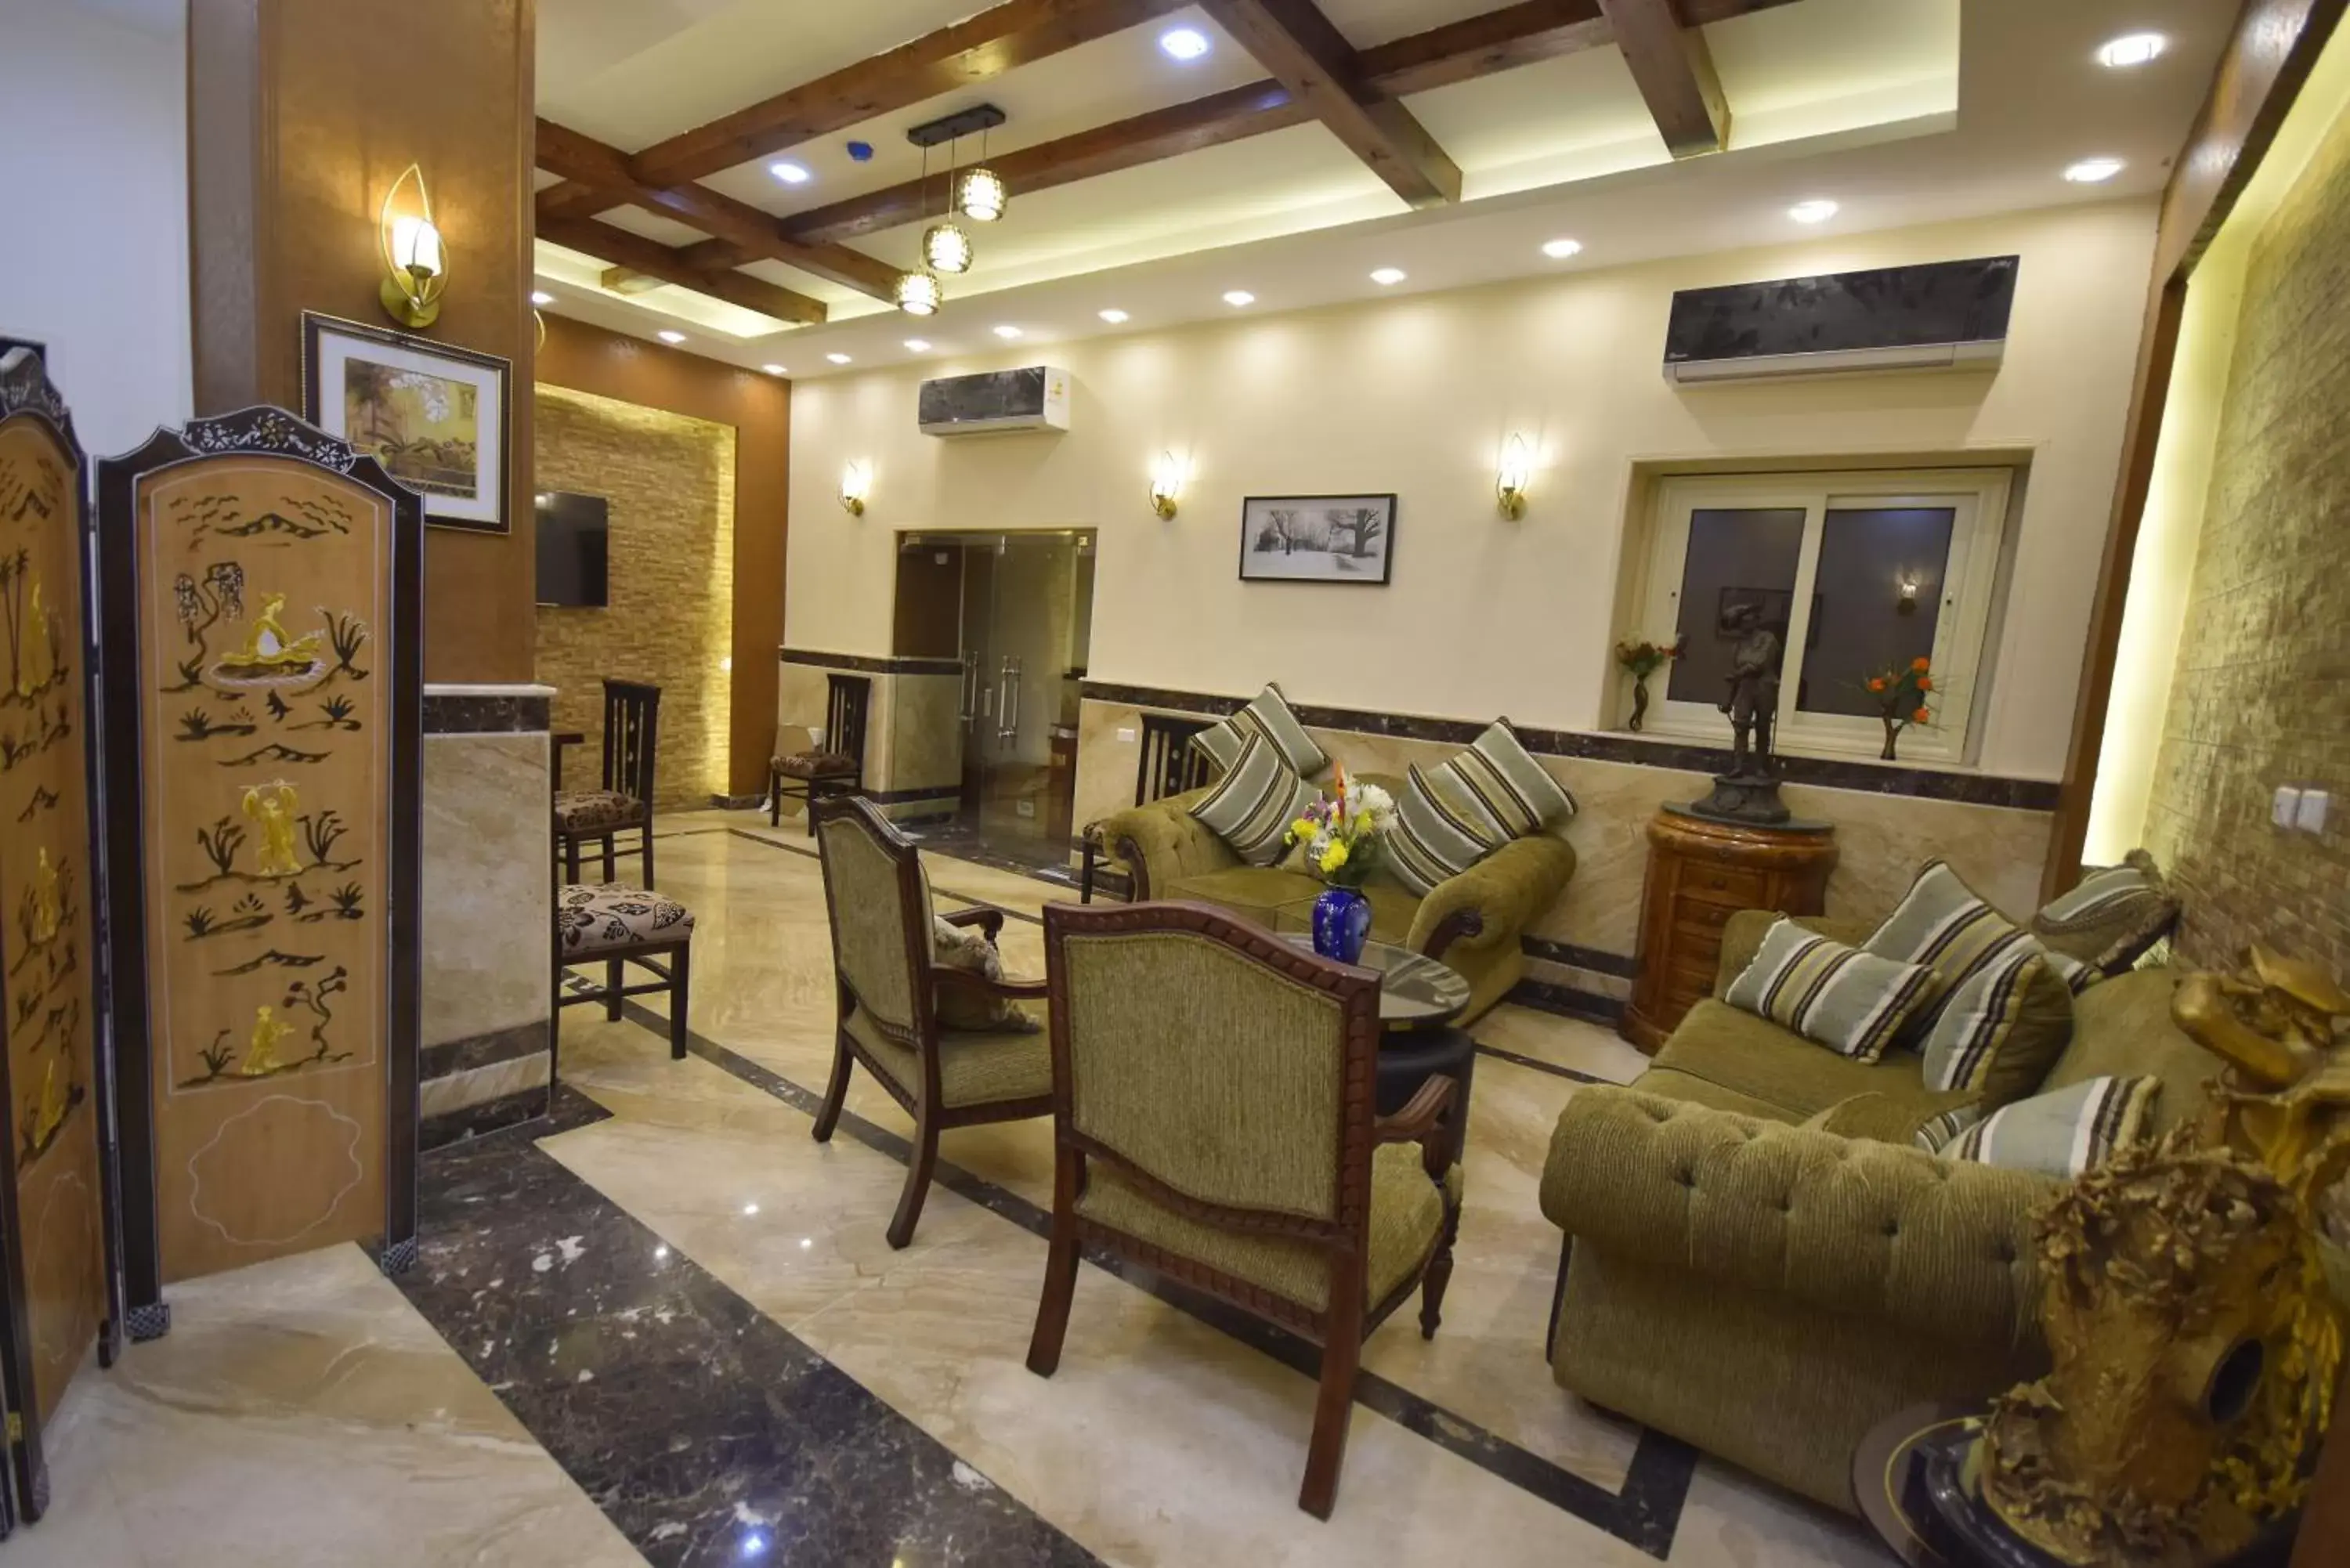 Lobby or reception in Amin Hotel